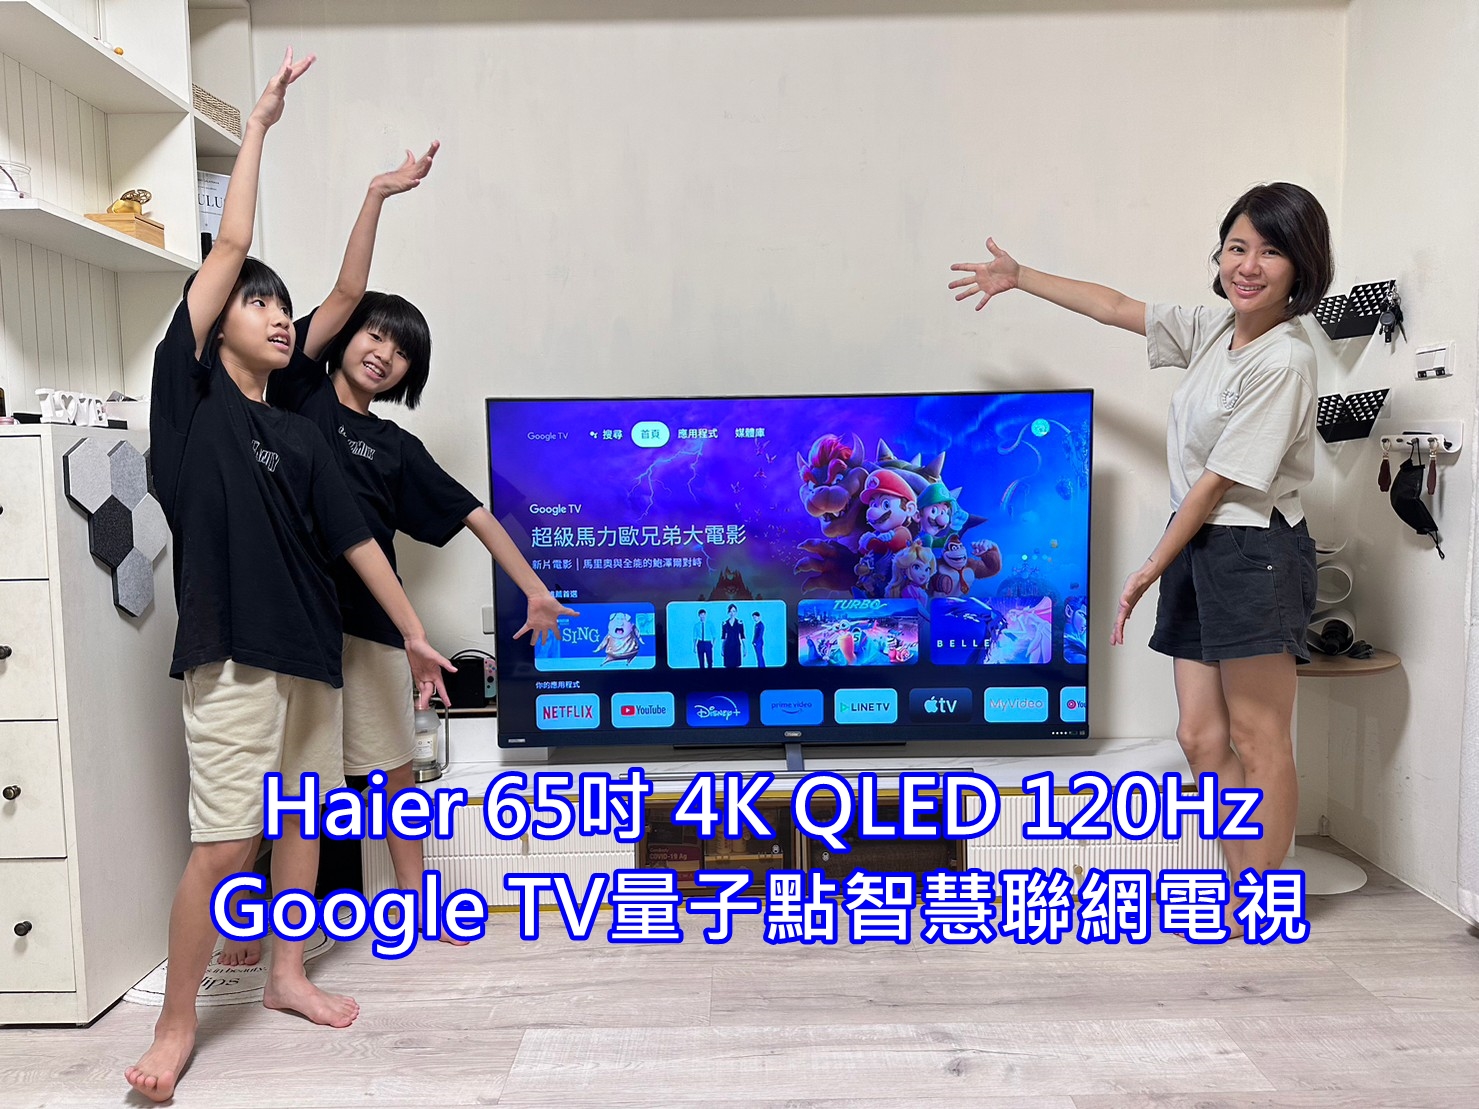 海爾 65吋 4K QLED 電視機皇 規格配備備好備滿 2萬5還有找！ Google TV 內建正版Netflix / YouTube